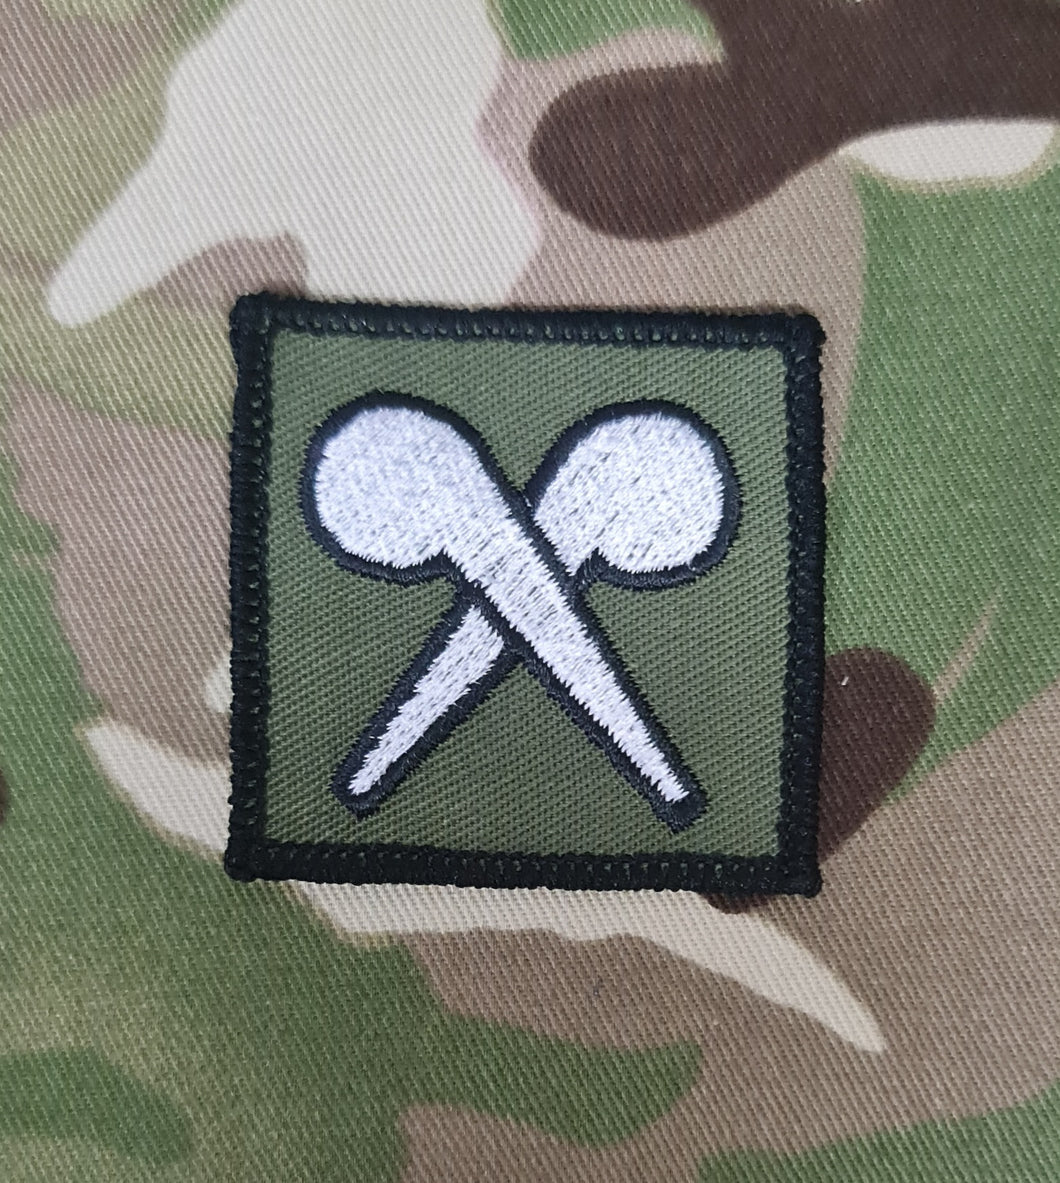 Joint NBC Defence Regiment (Tank Regiment / RAF / RE - 28 Engineer Regiment)  (CBRN) Badge Subdued Unit Badge